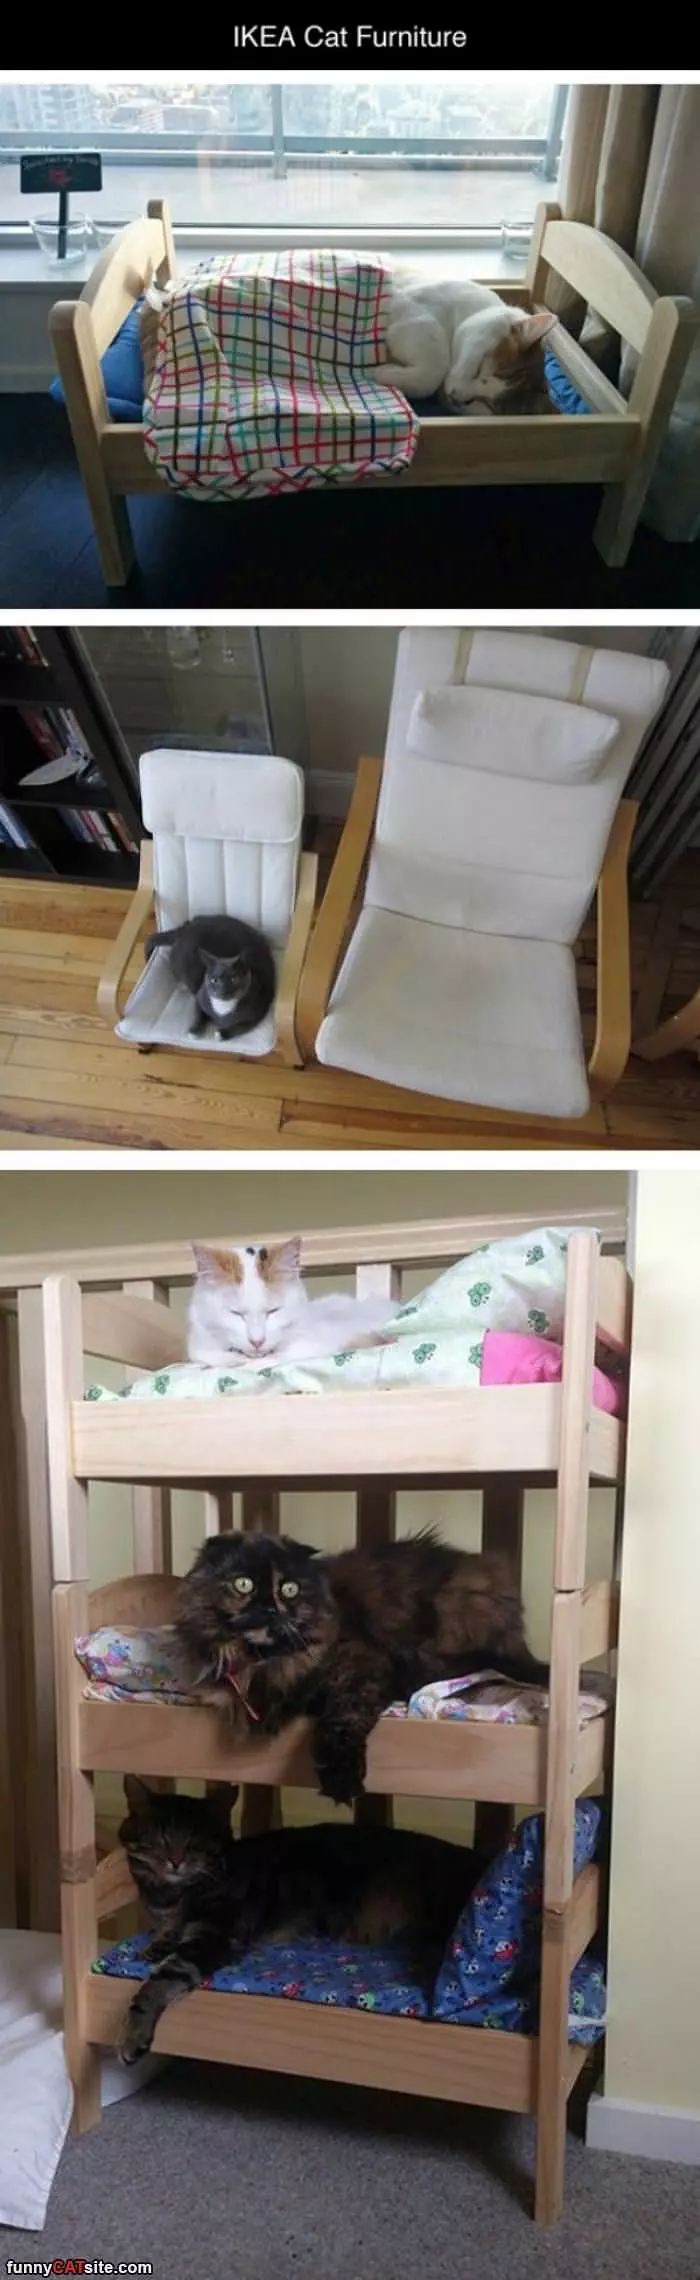 Ikea Cat Furniture